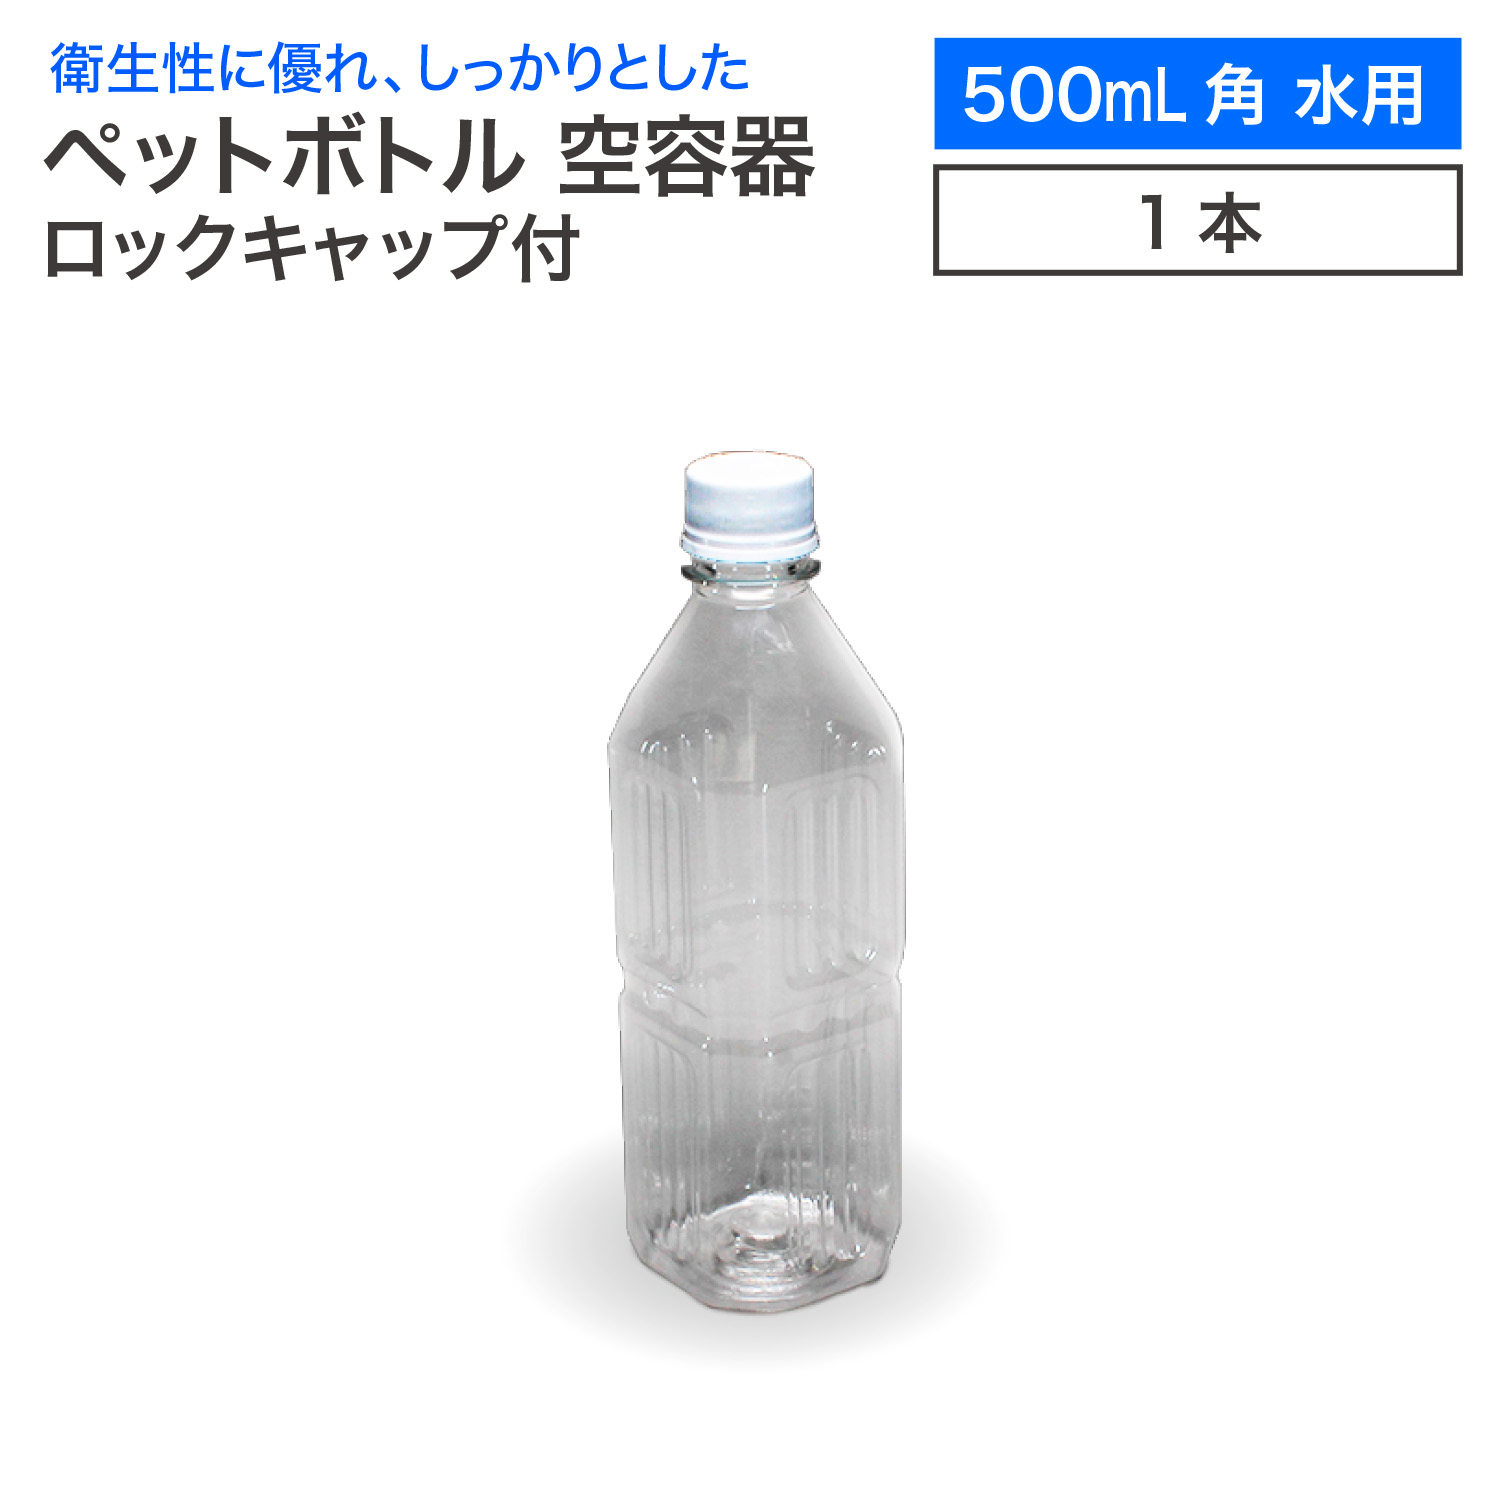 【楽天市場】【10本セット】空 ペットボトル 空容器 500ml角 水用 